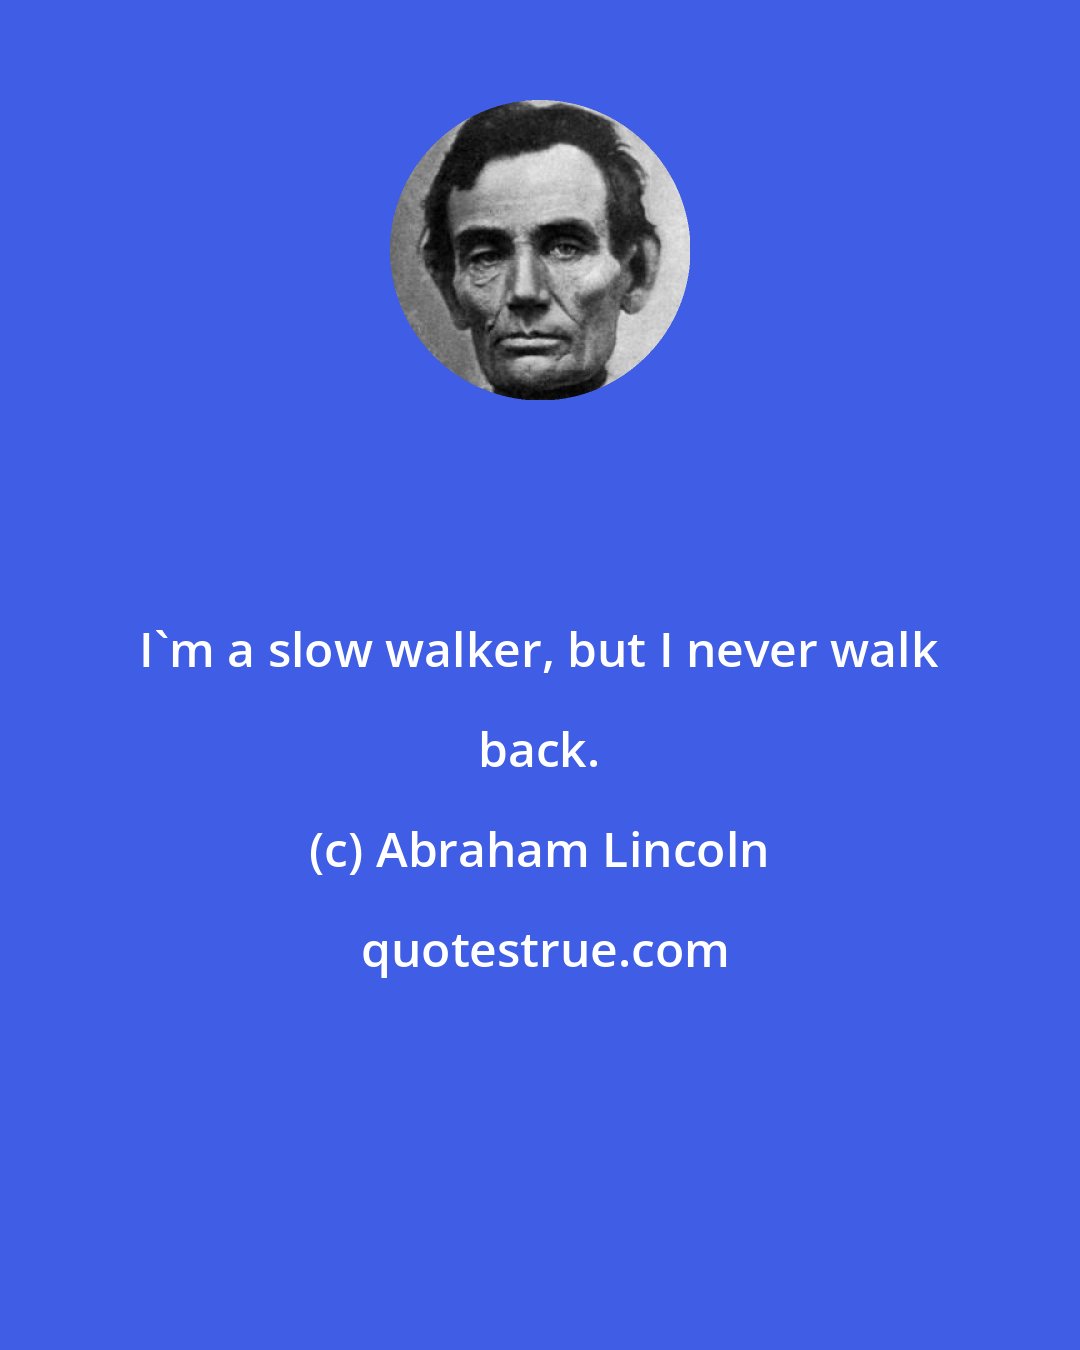 Abraham Lincoln: I'm a slow walker, but I never walk back.